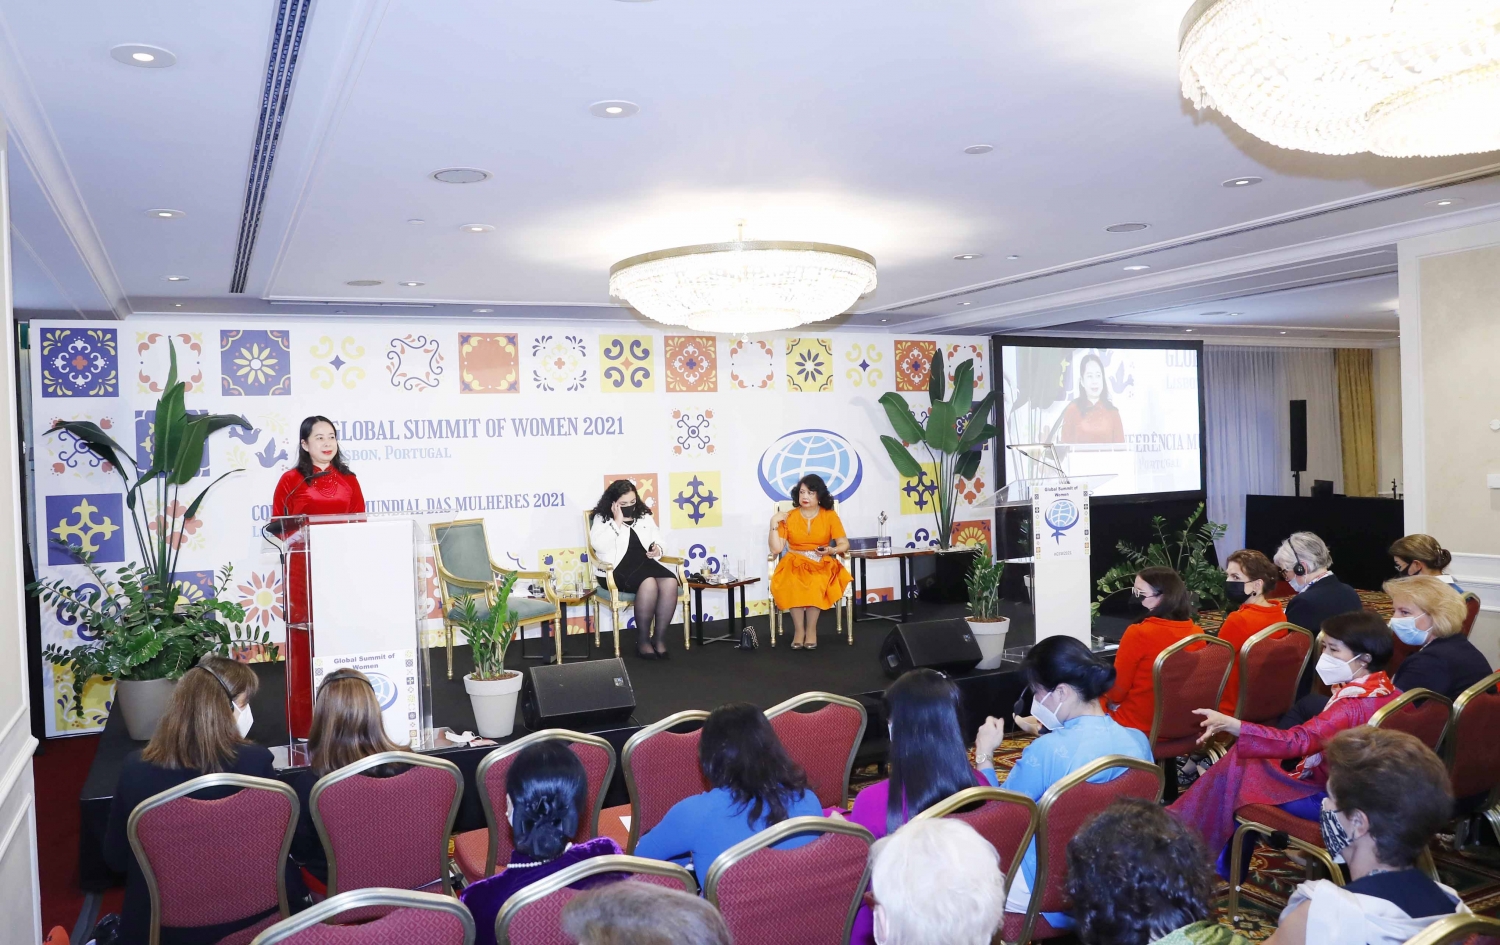 Phó Chủ tịch nước Võ Thị Ánh Xuân phát biểu tại Lễ khai mạc Hội nghị thượng đỉnh phụ nữ toàn cầu 2021